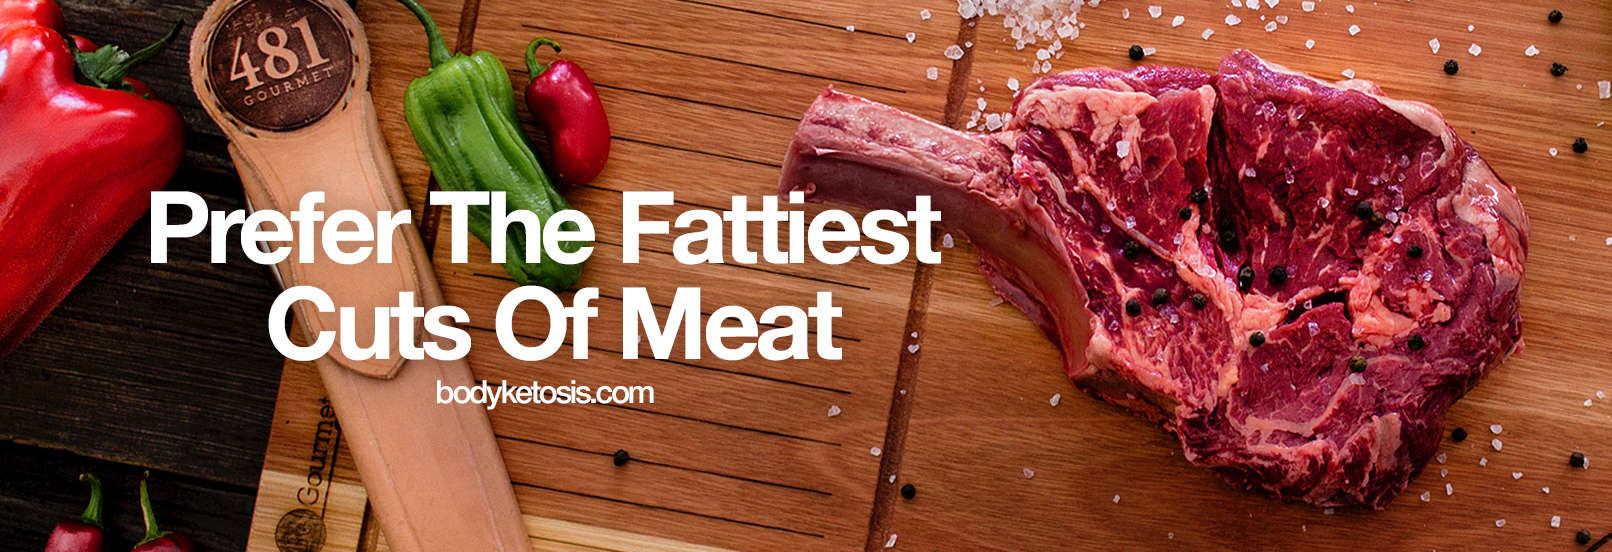 get more fat keto fattiest cuts of meat